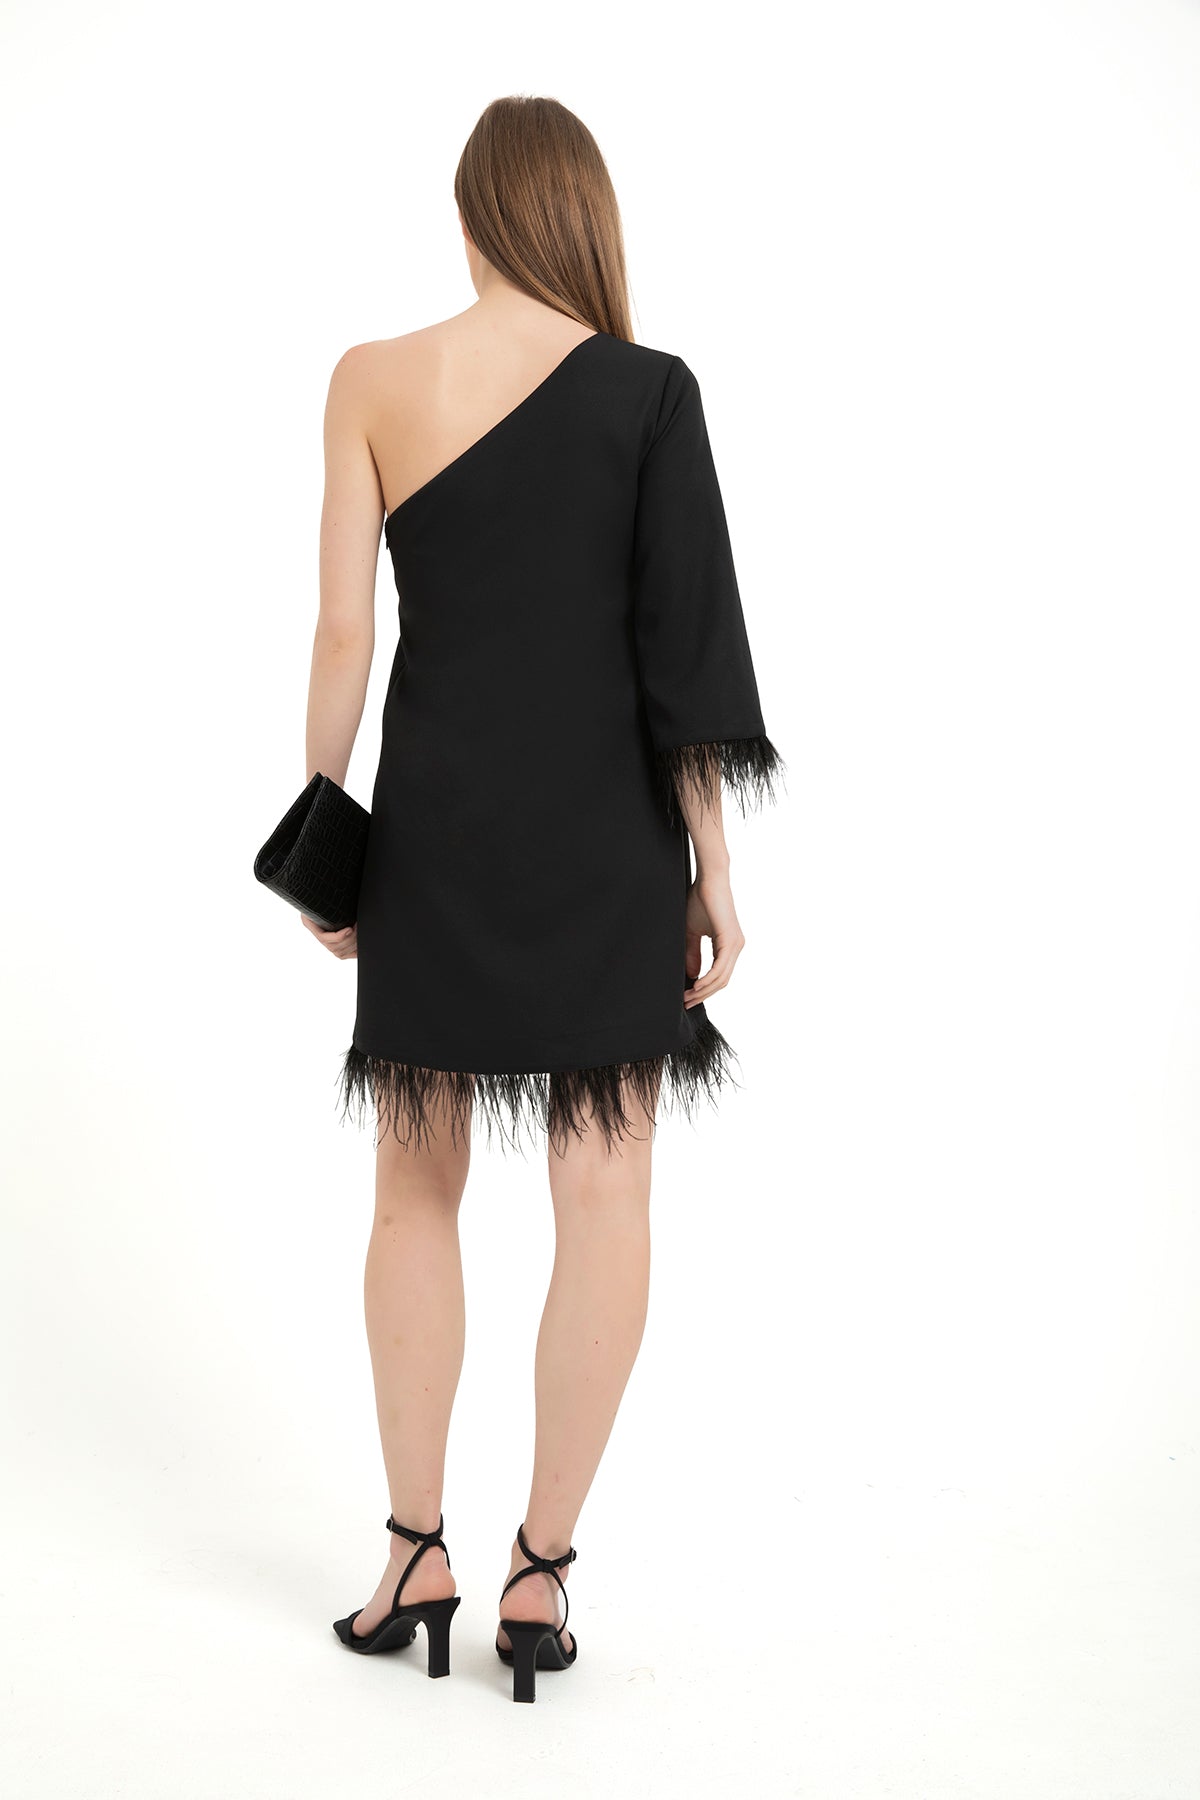 Faux Feather Trim One Shoulder Dress - Black